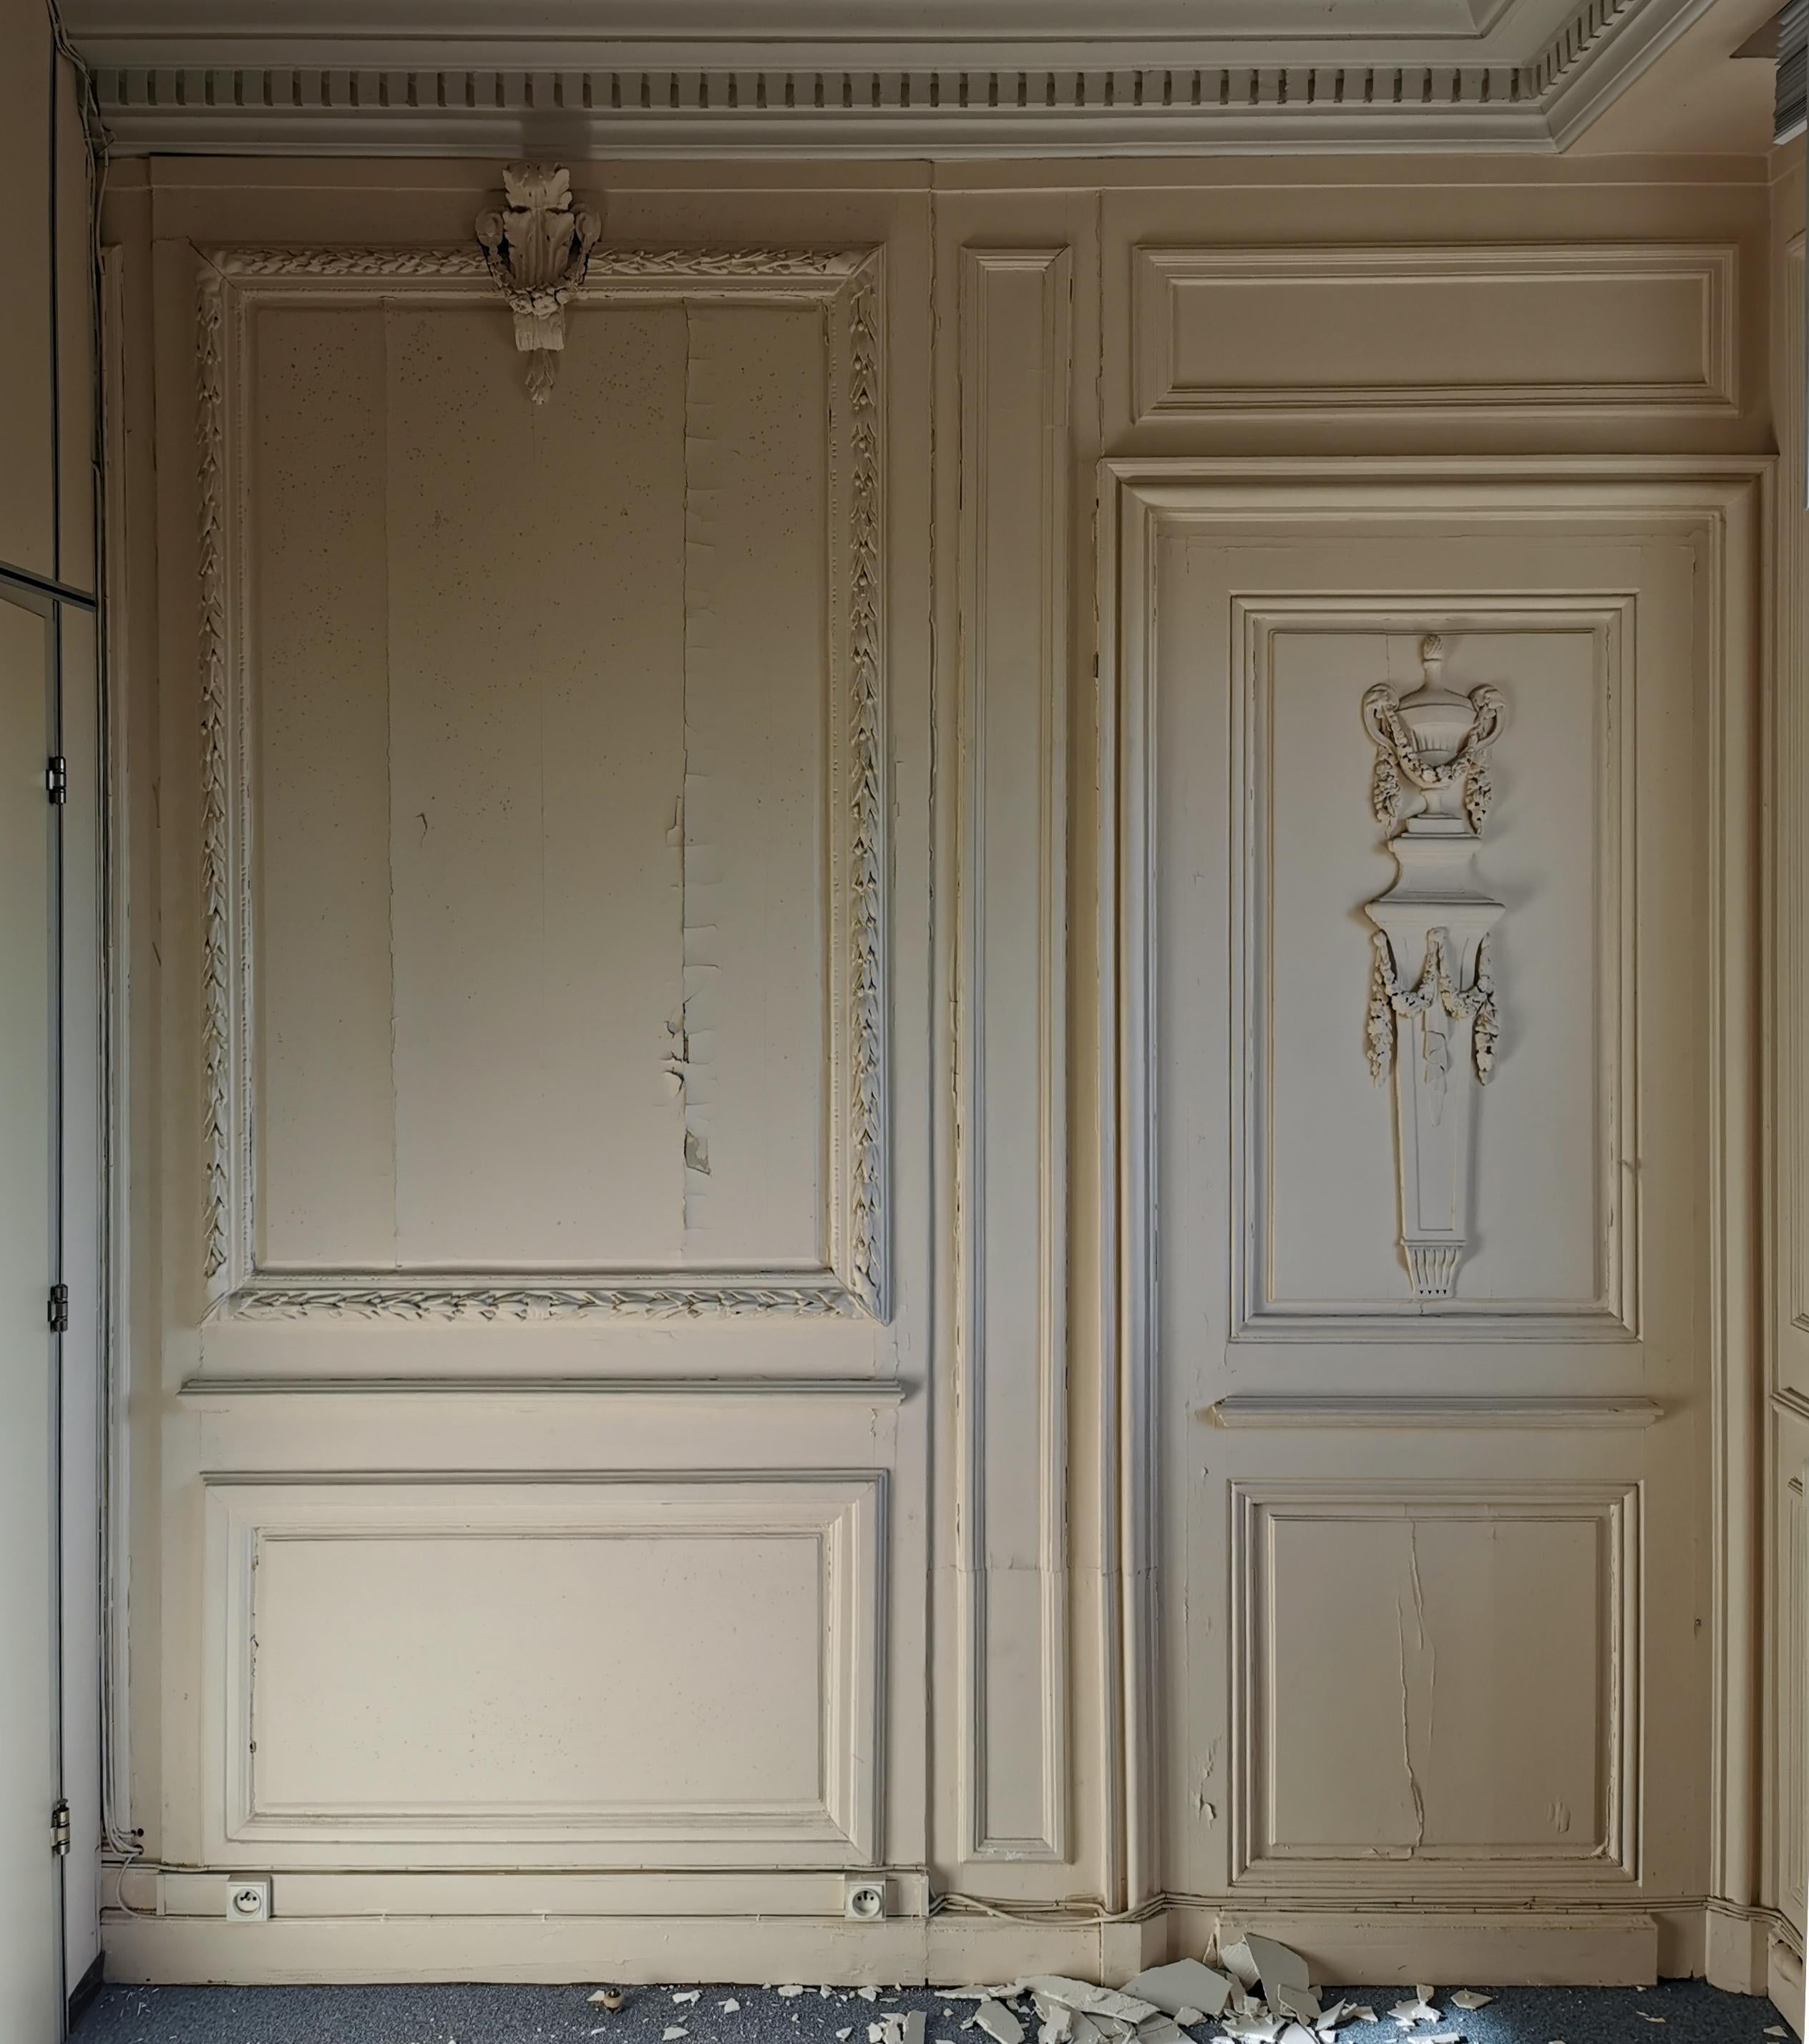 Dieses schöne getäfelte Zimmer besteht aus Elementen aus der Zeit Ludwigs XVI. auf einer Kiefernstruktur, einige Elemente wurden auf neuere Rahmen aus dem 20.
Es zeigt ein weiß gestrichenes, getäfeltes Dekor, umrahmt von Olivenbaumblättern und